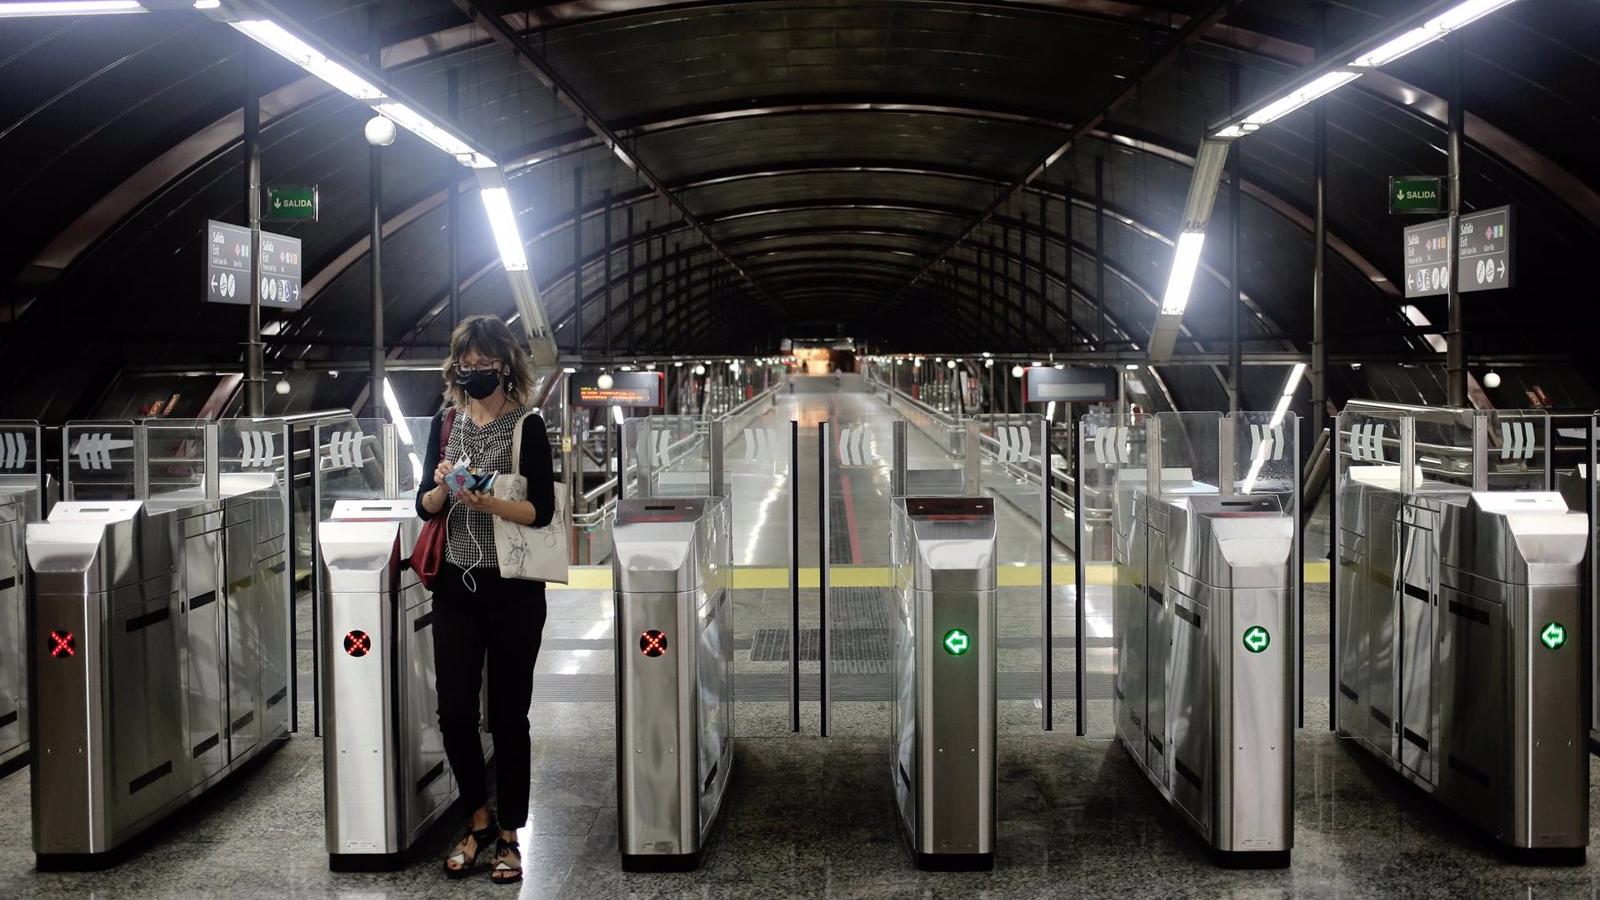 La línea 9 de Metro entre Colombia y Plaza de Castilla cerrará del 1 al 31 de agosto por trabajos de mejora